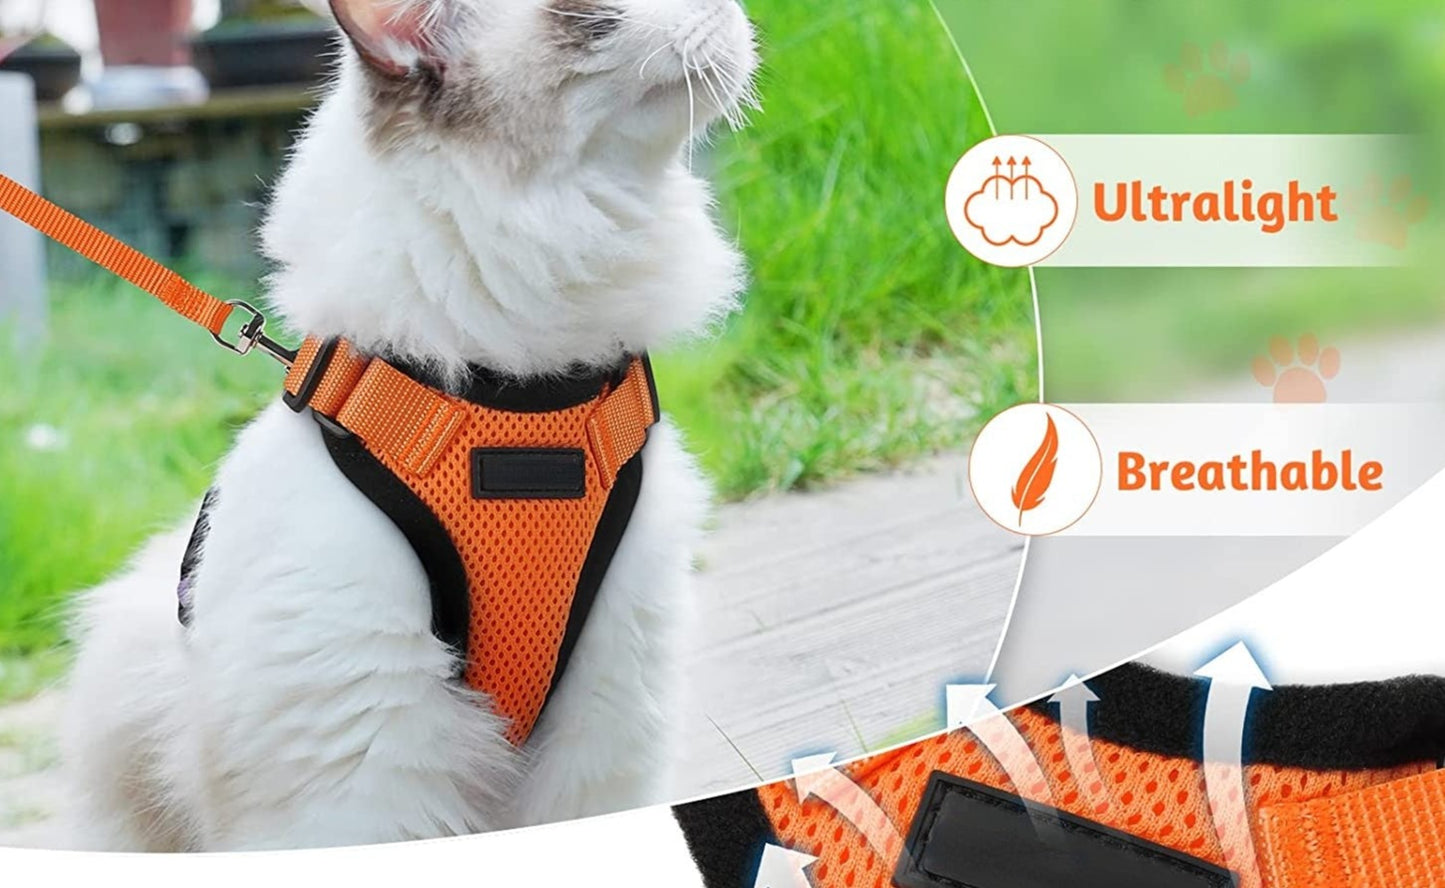 Seu Gato Merece o Melhor: ATUBAN Cat Harness - Estilo e Conforto para Passeios Inesquecíveis! shopjponline.com